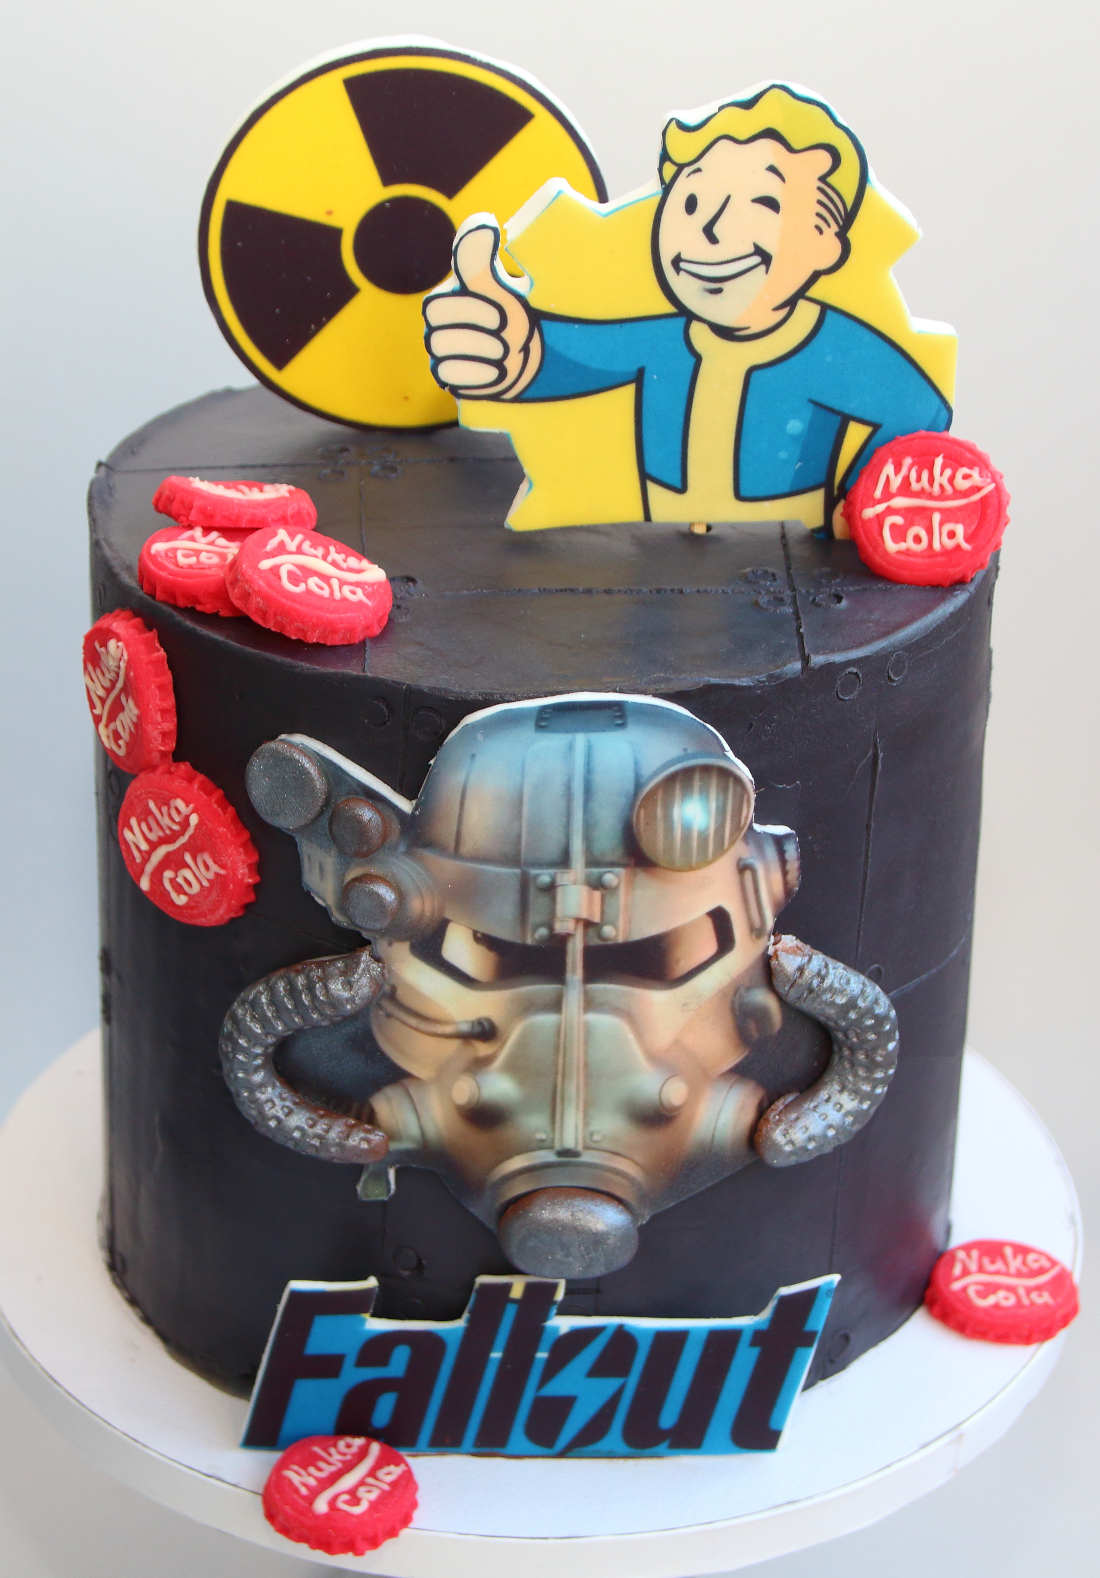 Vault Boy on a Fallout cake and radioactivity simbol